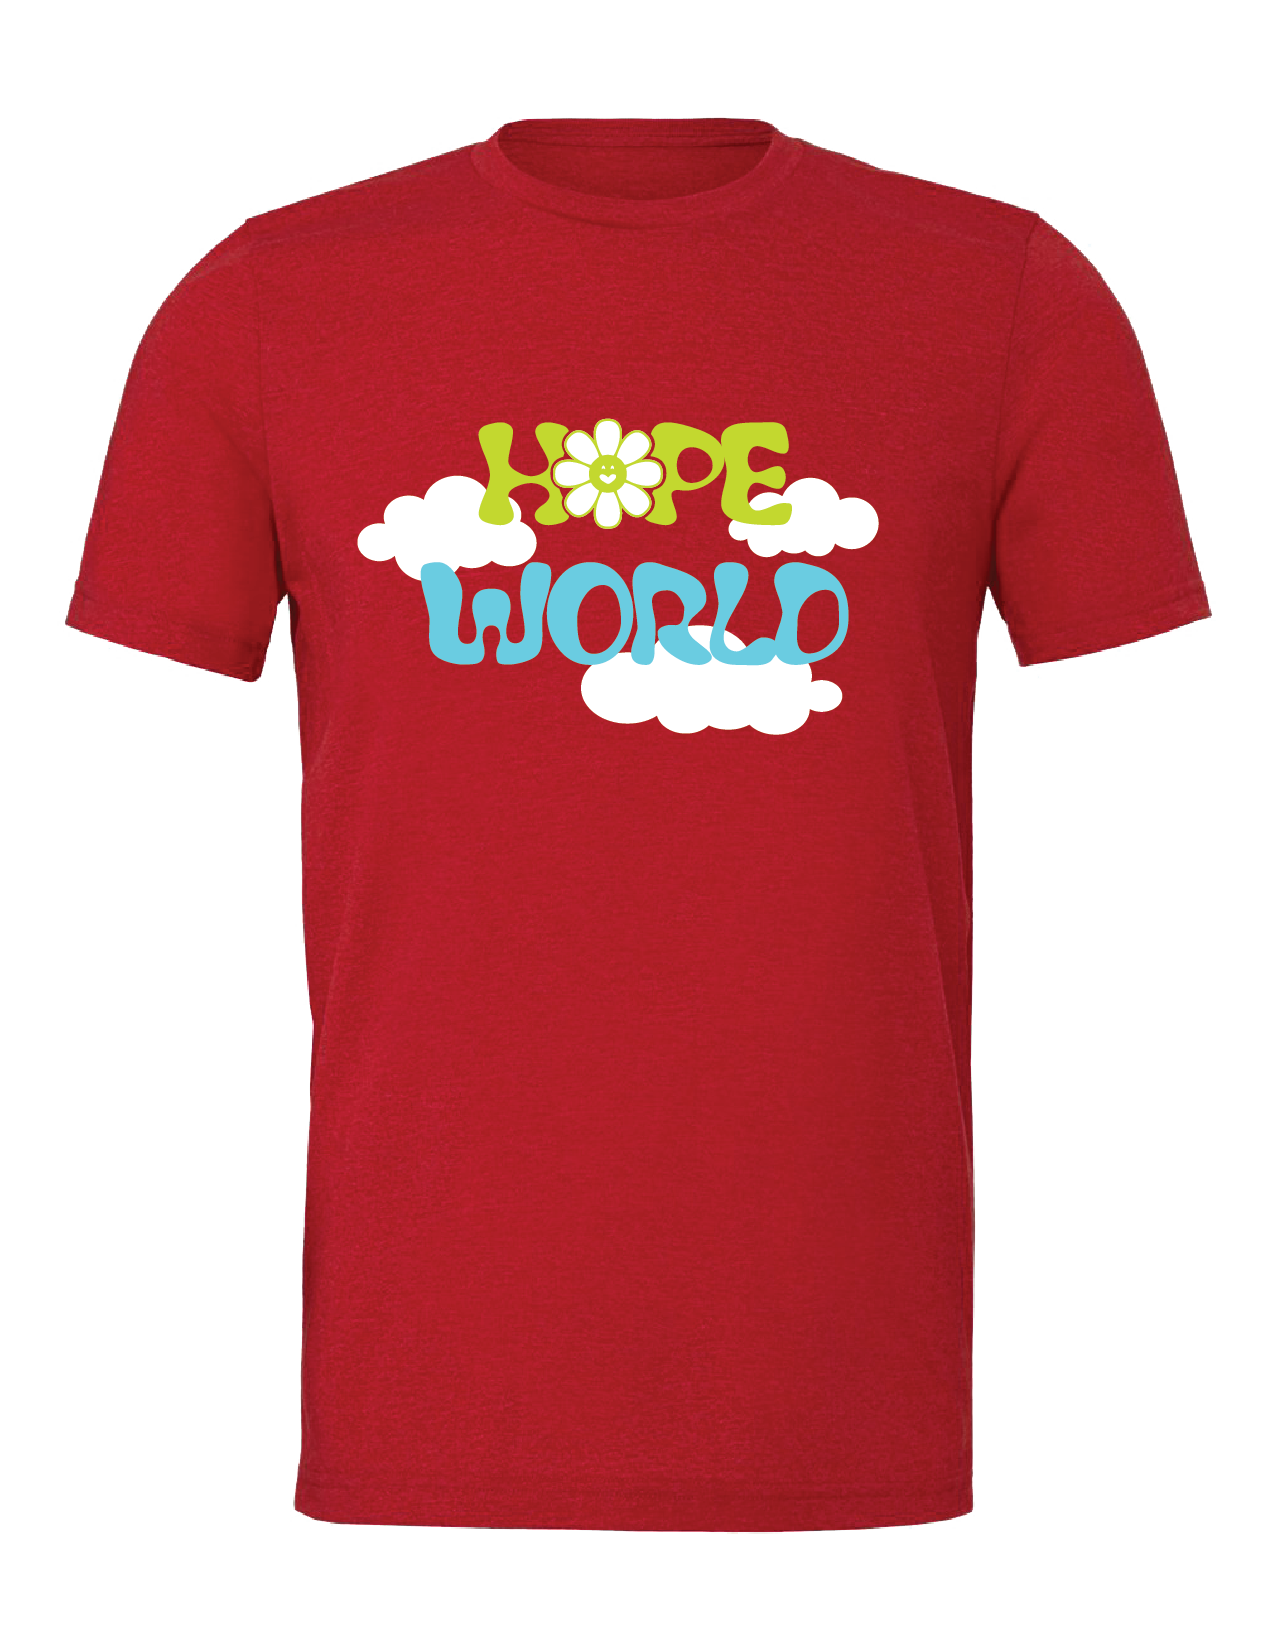 T-Shirt - Hope World/Palooza